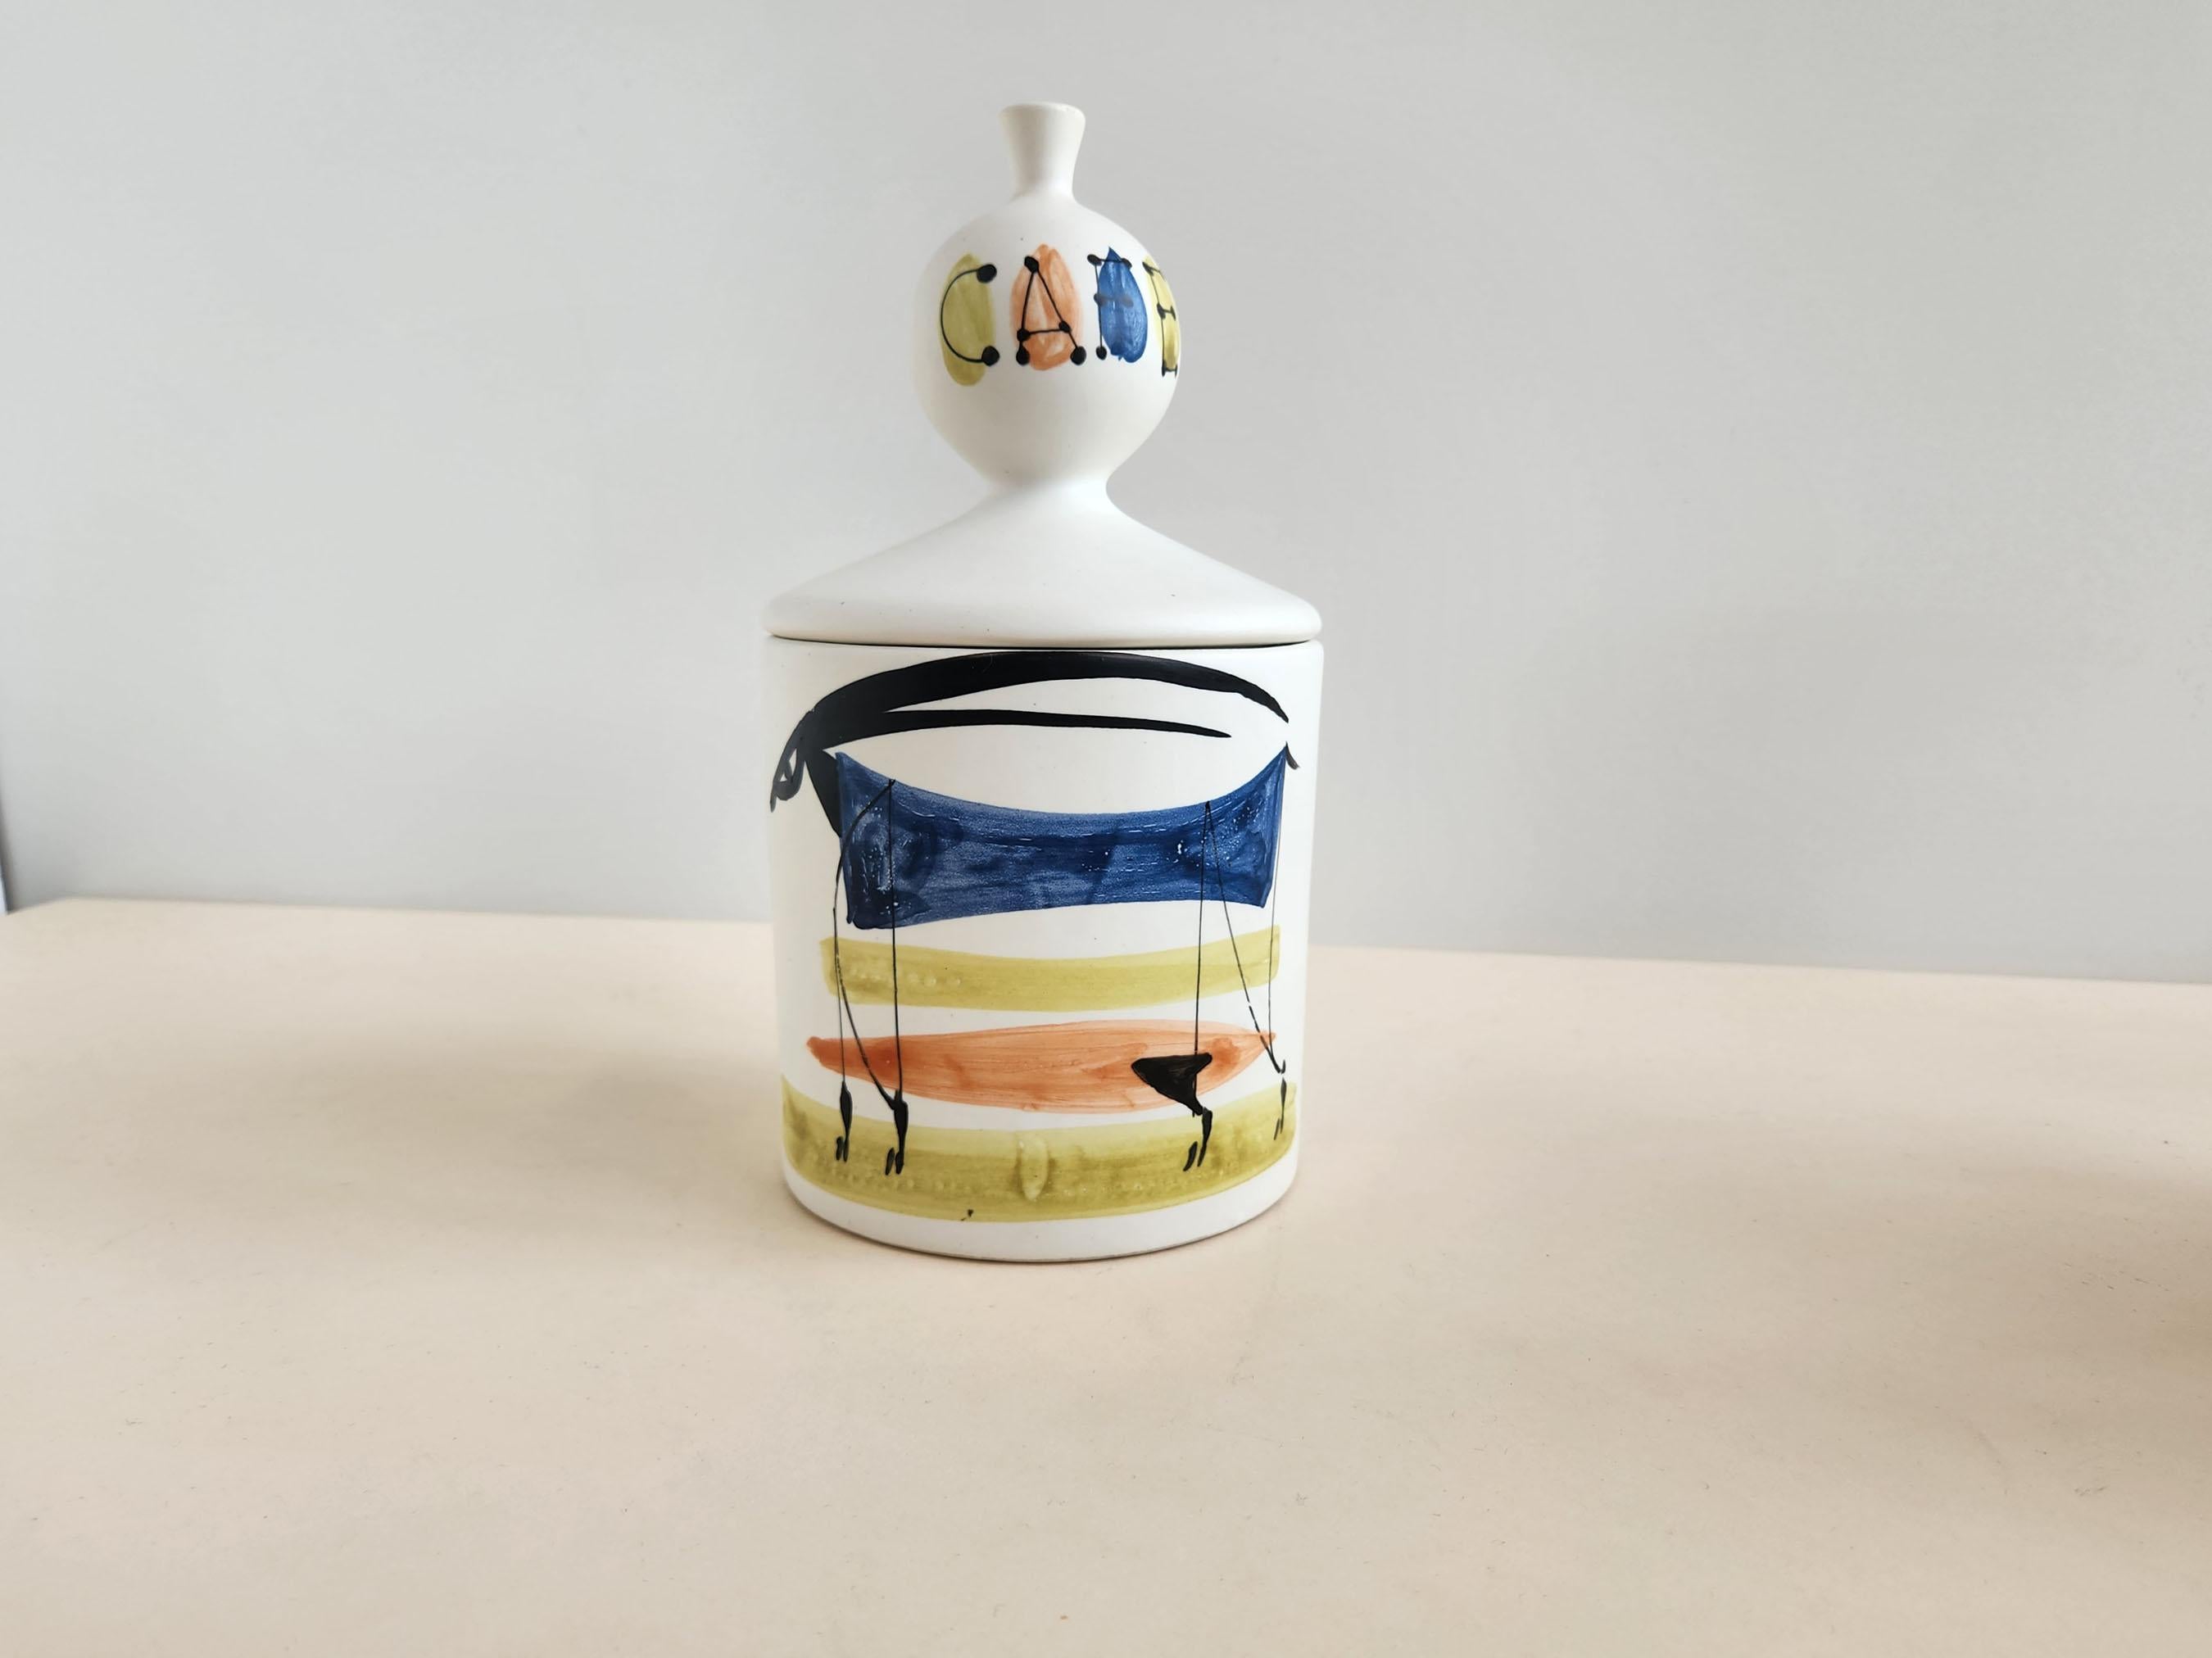 Vintage Keramik-Kaffeekanne mit Deckel von Roger Capron - Vallauris, Frankreich

Roger Capron war ein einflussreicher französischer Keramiker, der für seine gekachelten Tische und die Verwendung wiederkehrender Motive wie stilisierte Zweige und